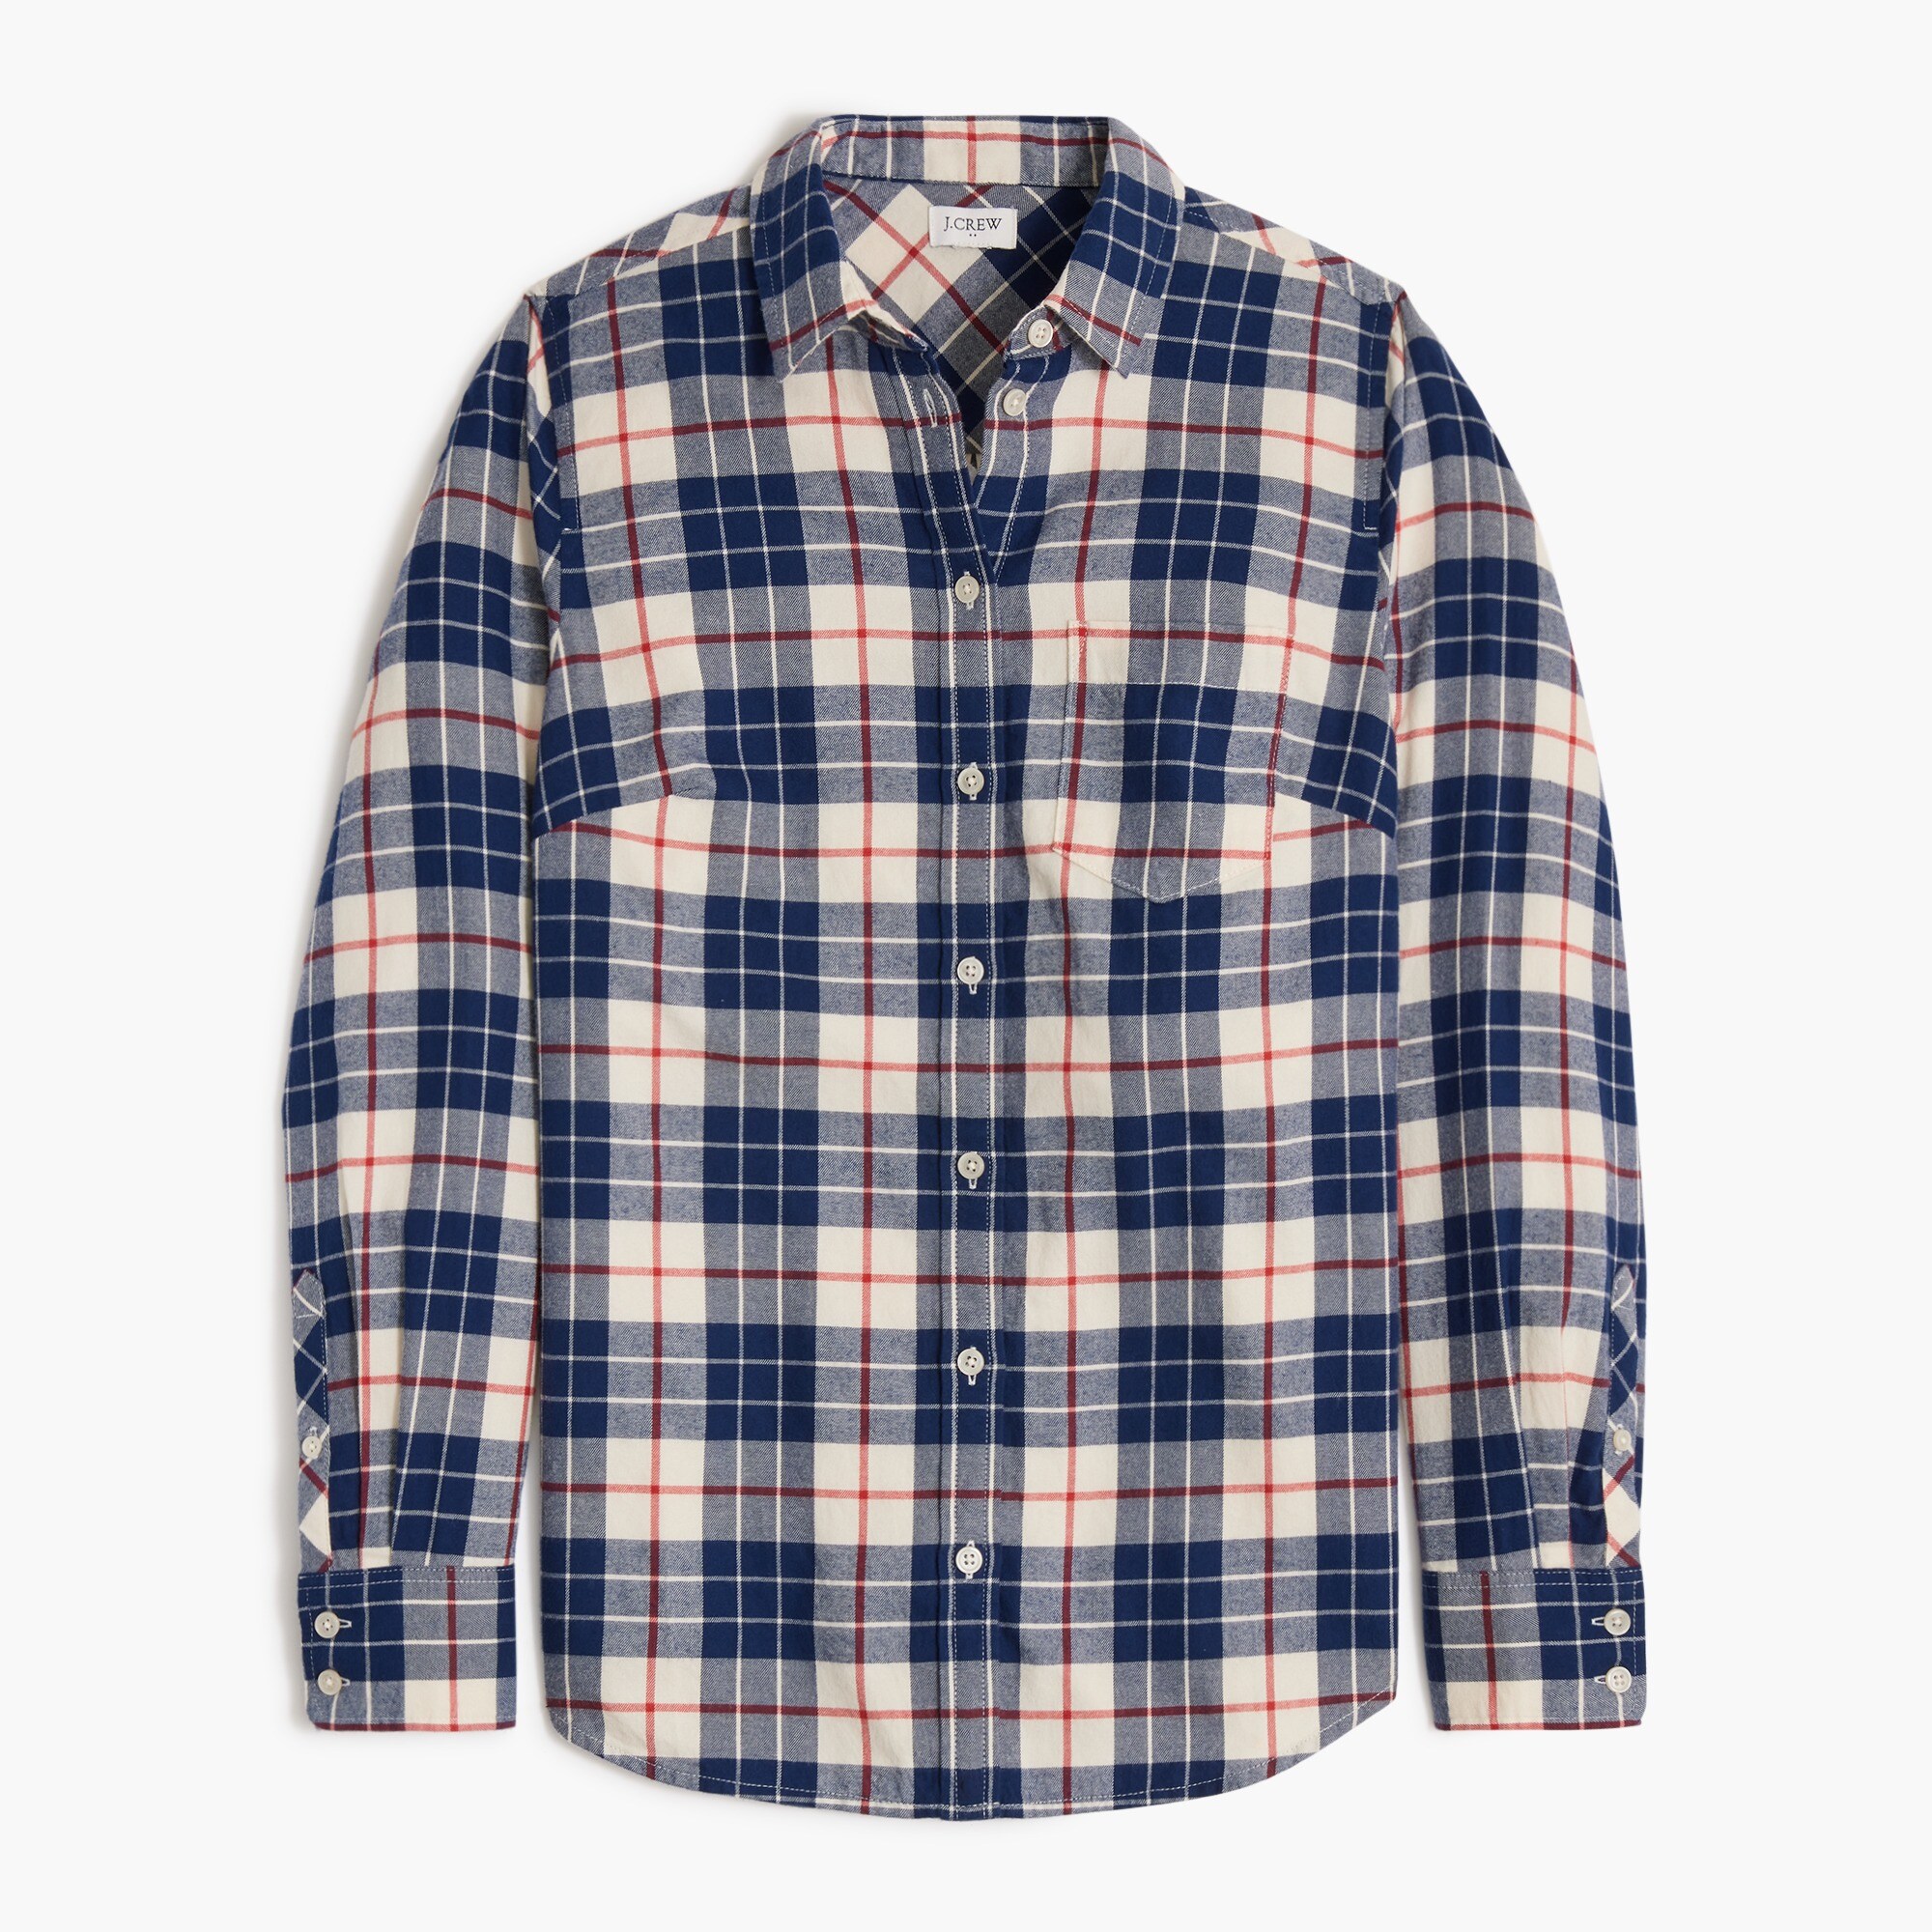  Plaid flannel shirt